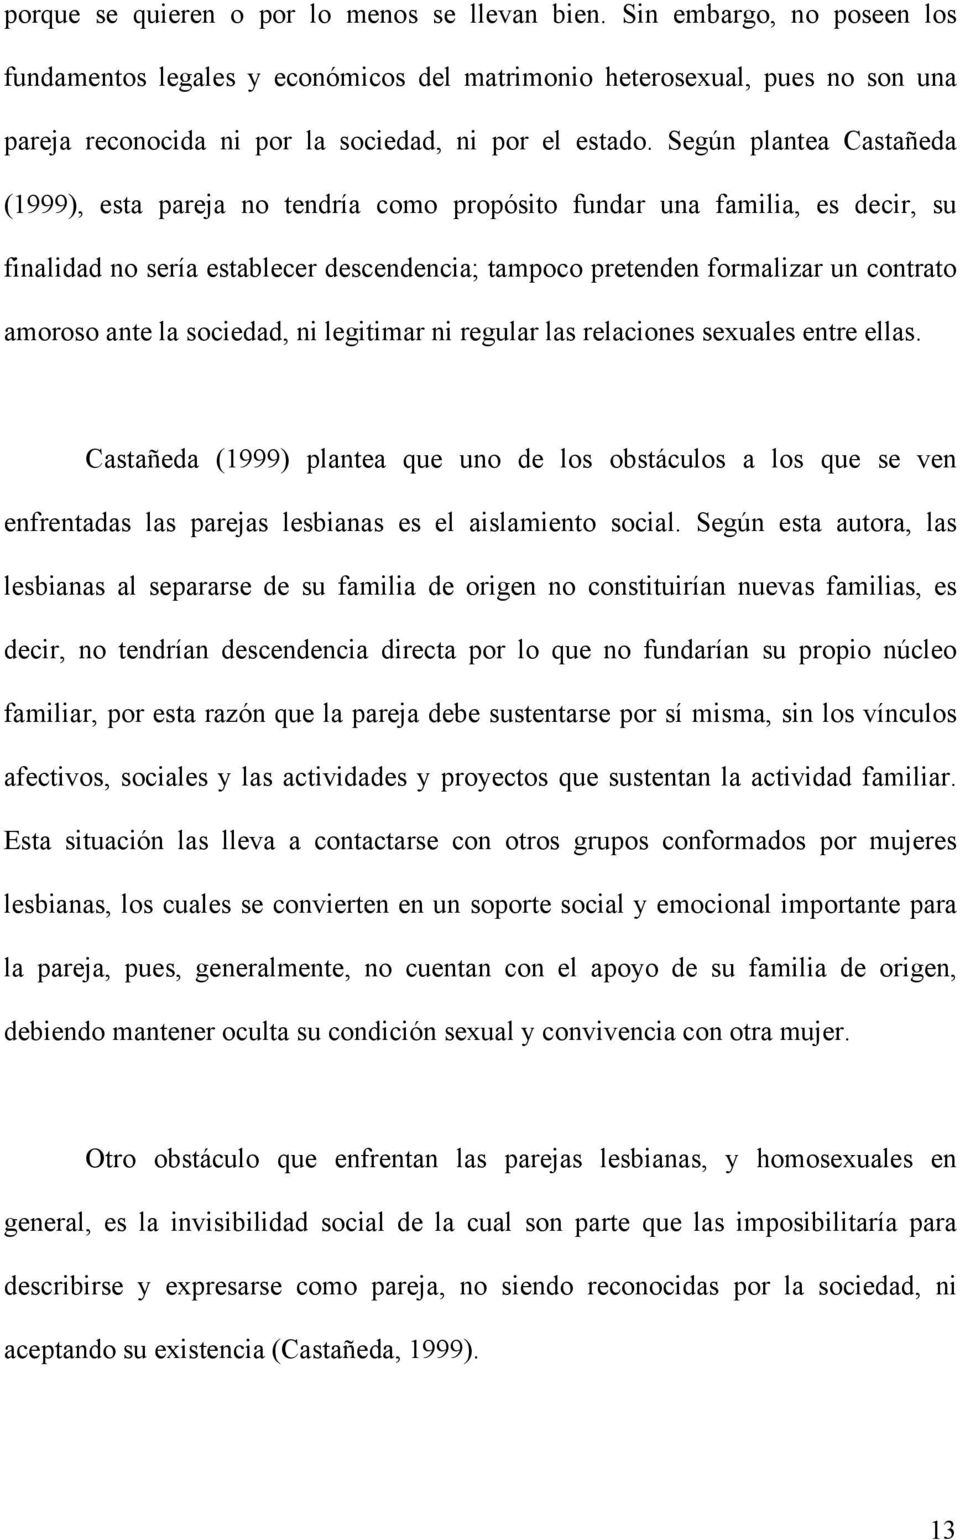 Según plantea Castañeda (1999), esta pareja no tendría como propósito fundar una familia, es decir, su finalidad no sería establecer descendencia; tampoco pretenden formalizar un contrato amoroso